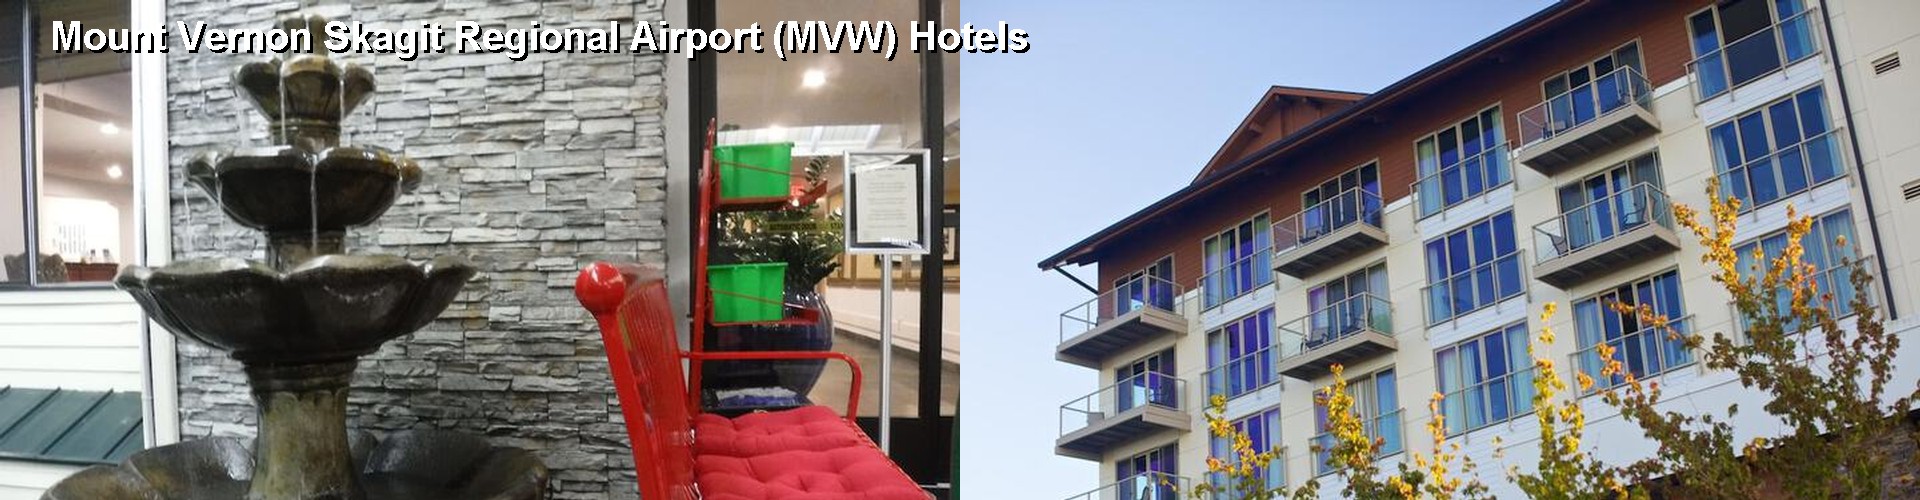 4 Best Hotels near Mount Vernon Skagit Regional Airport (MVW)